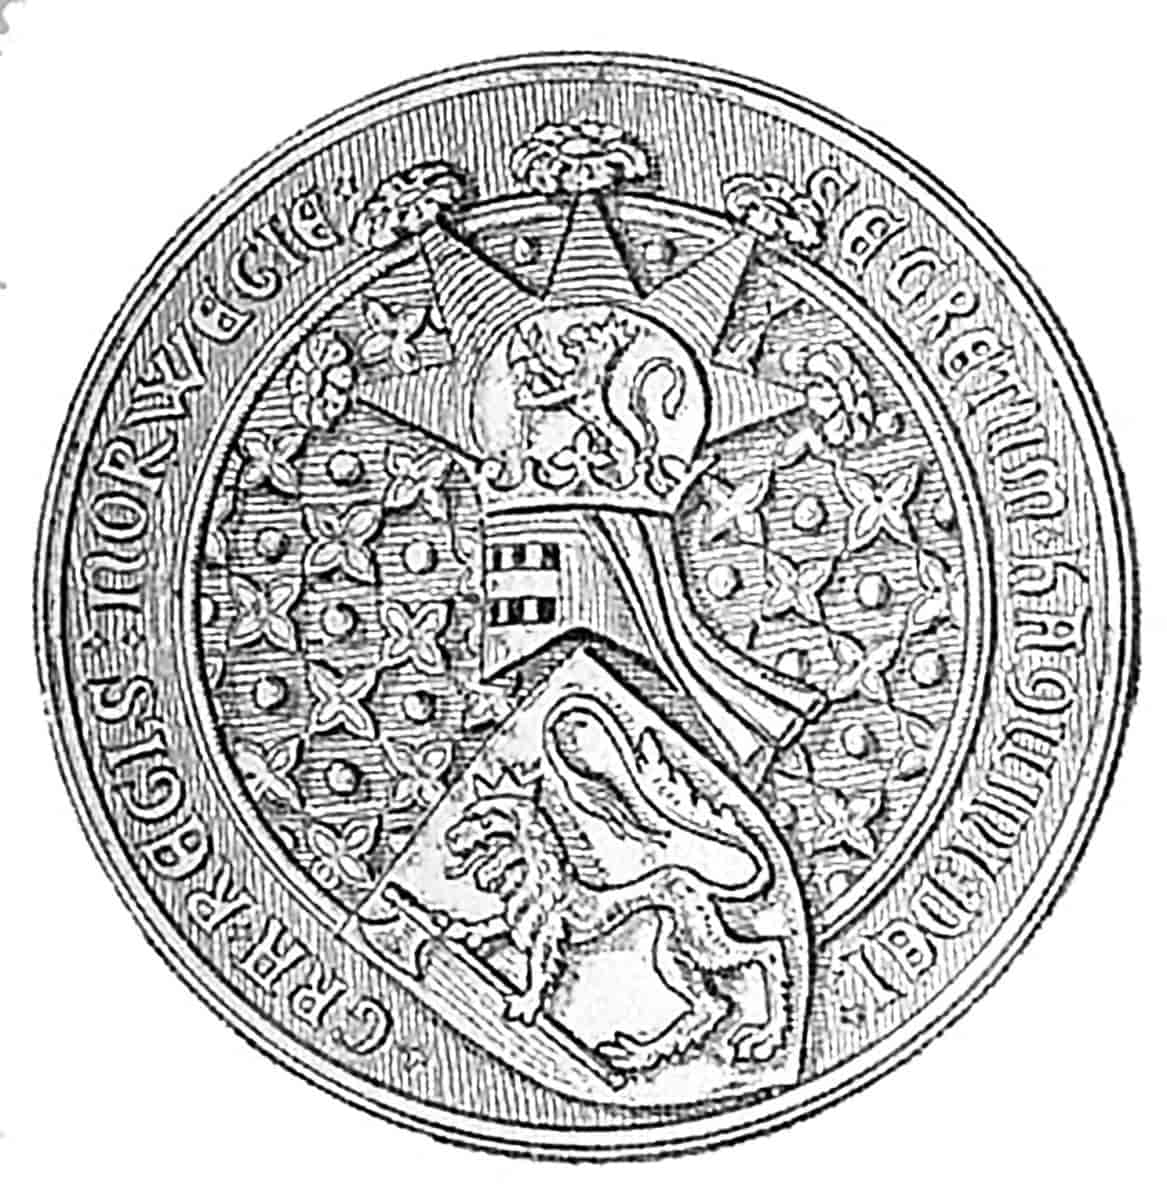 Kong Håkon 6.s segl